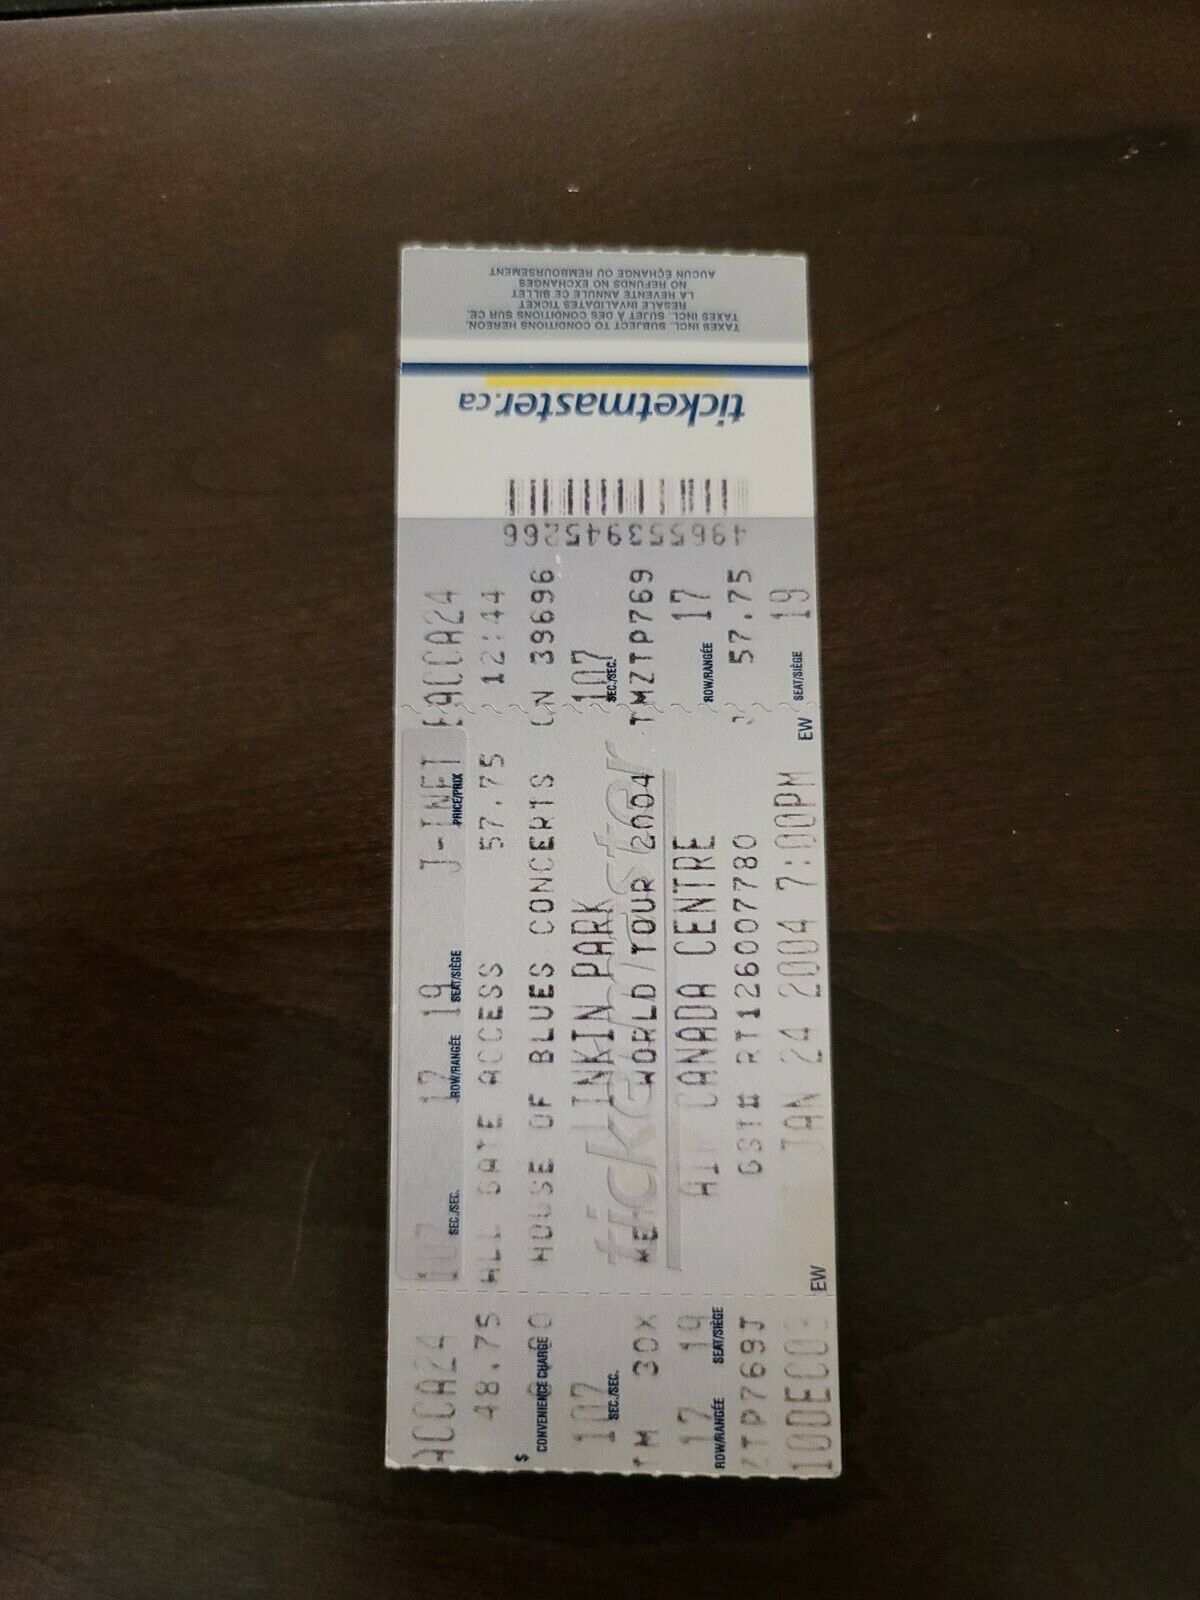 Linkin Park 2004, Toronto Air Canada Centre Original Concert Ticket Stub